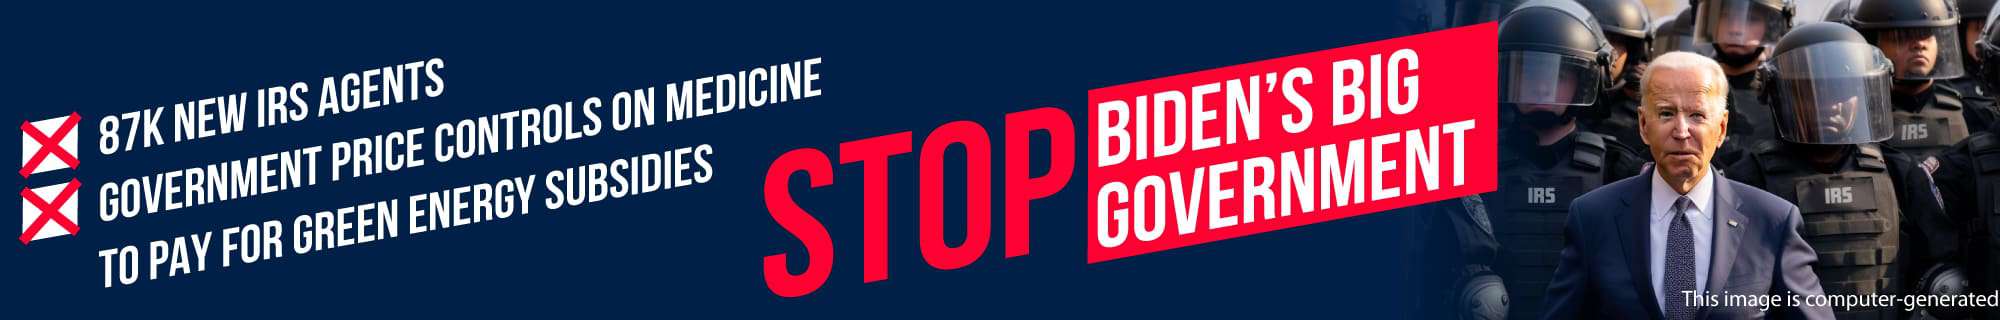 Stop Biden's Big Government